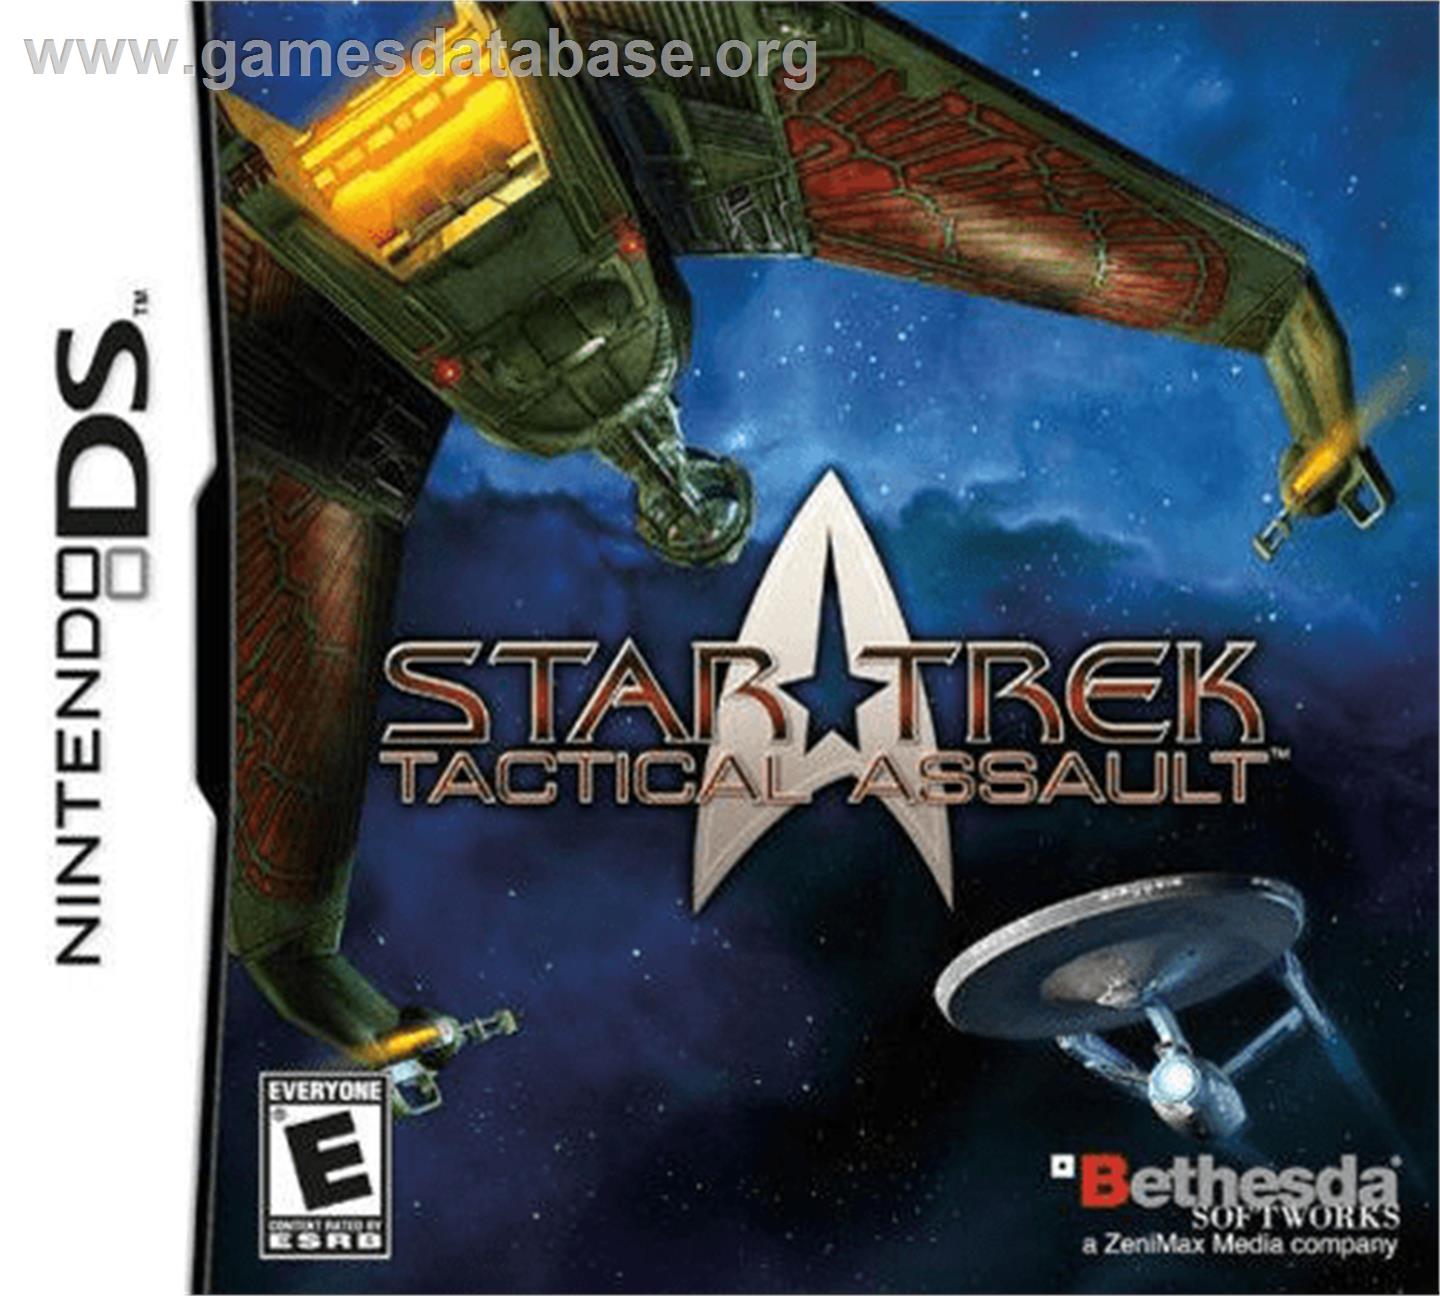 Star Trek Tactical Assault - Nintendo DS - Artwork - Box